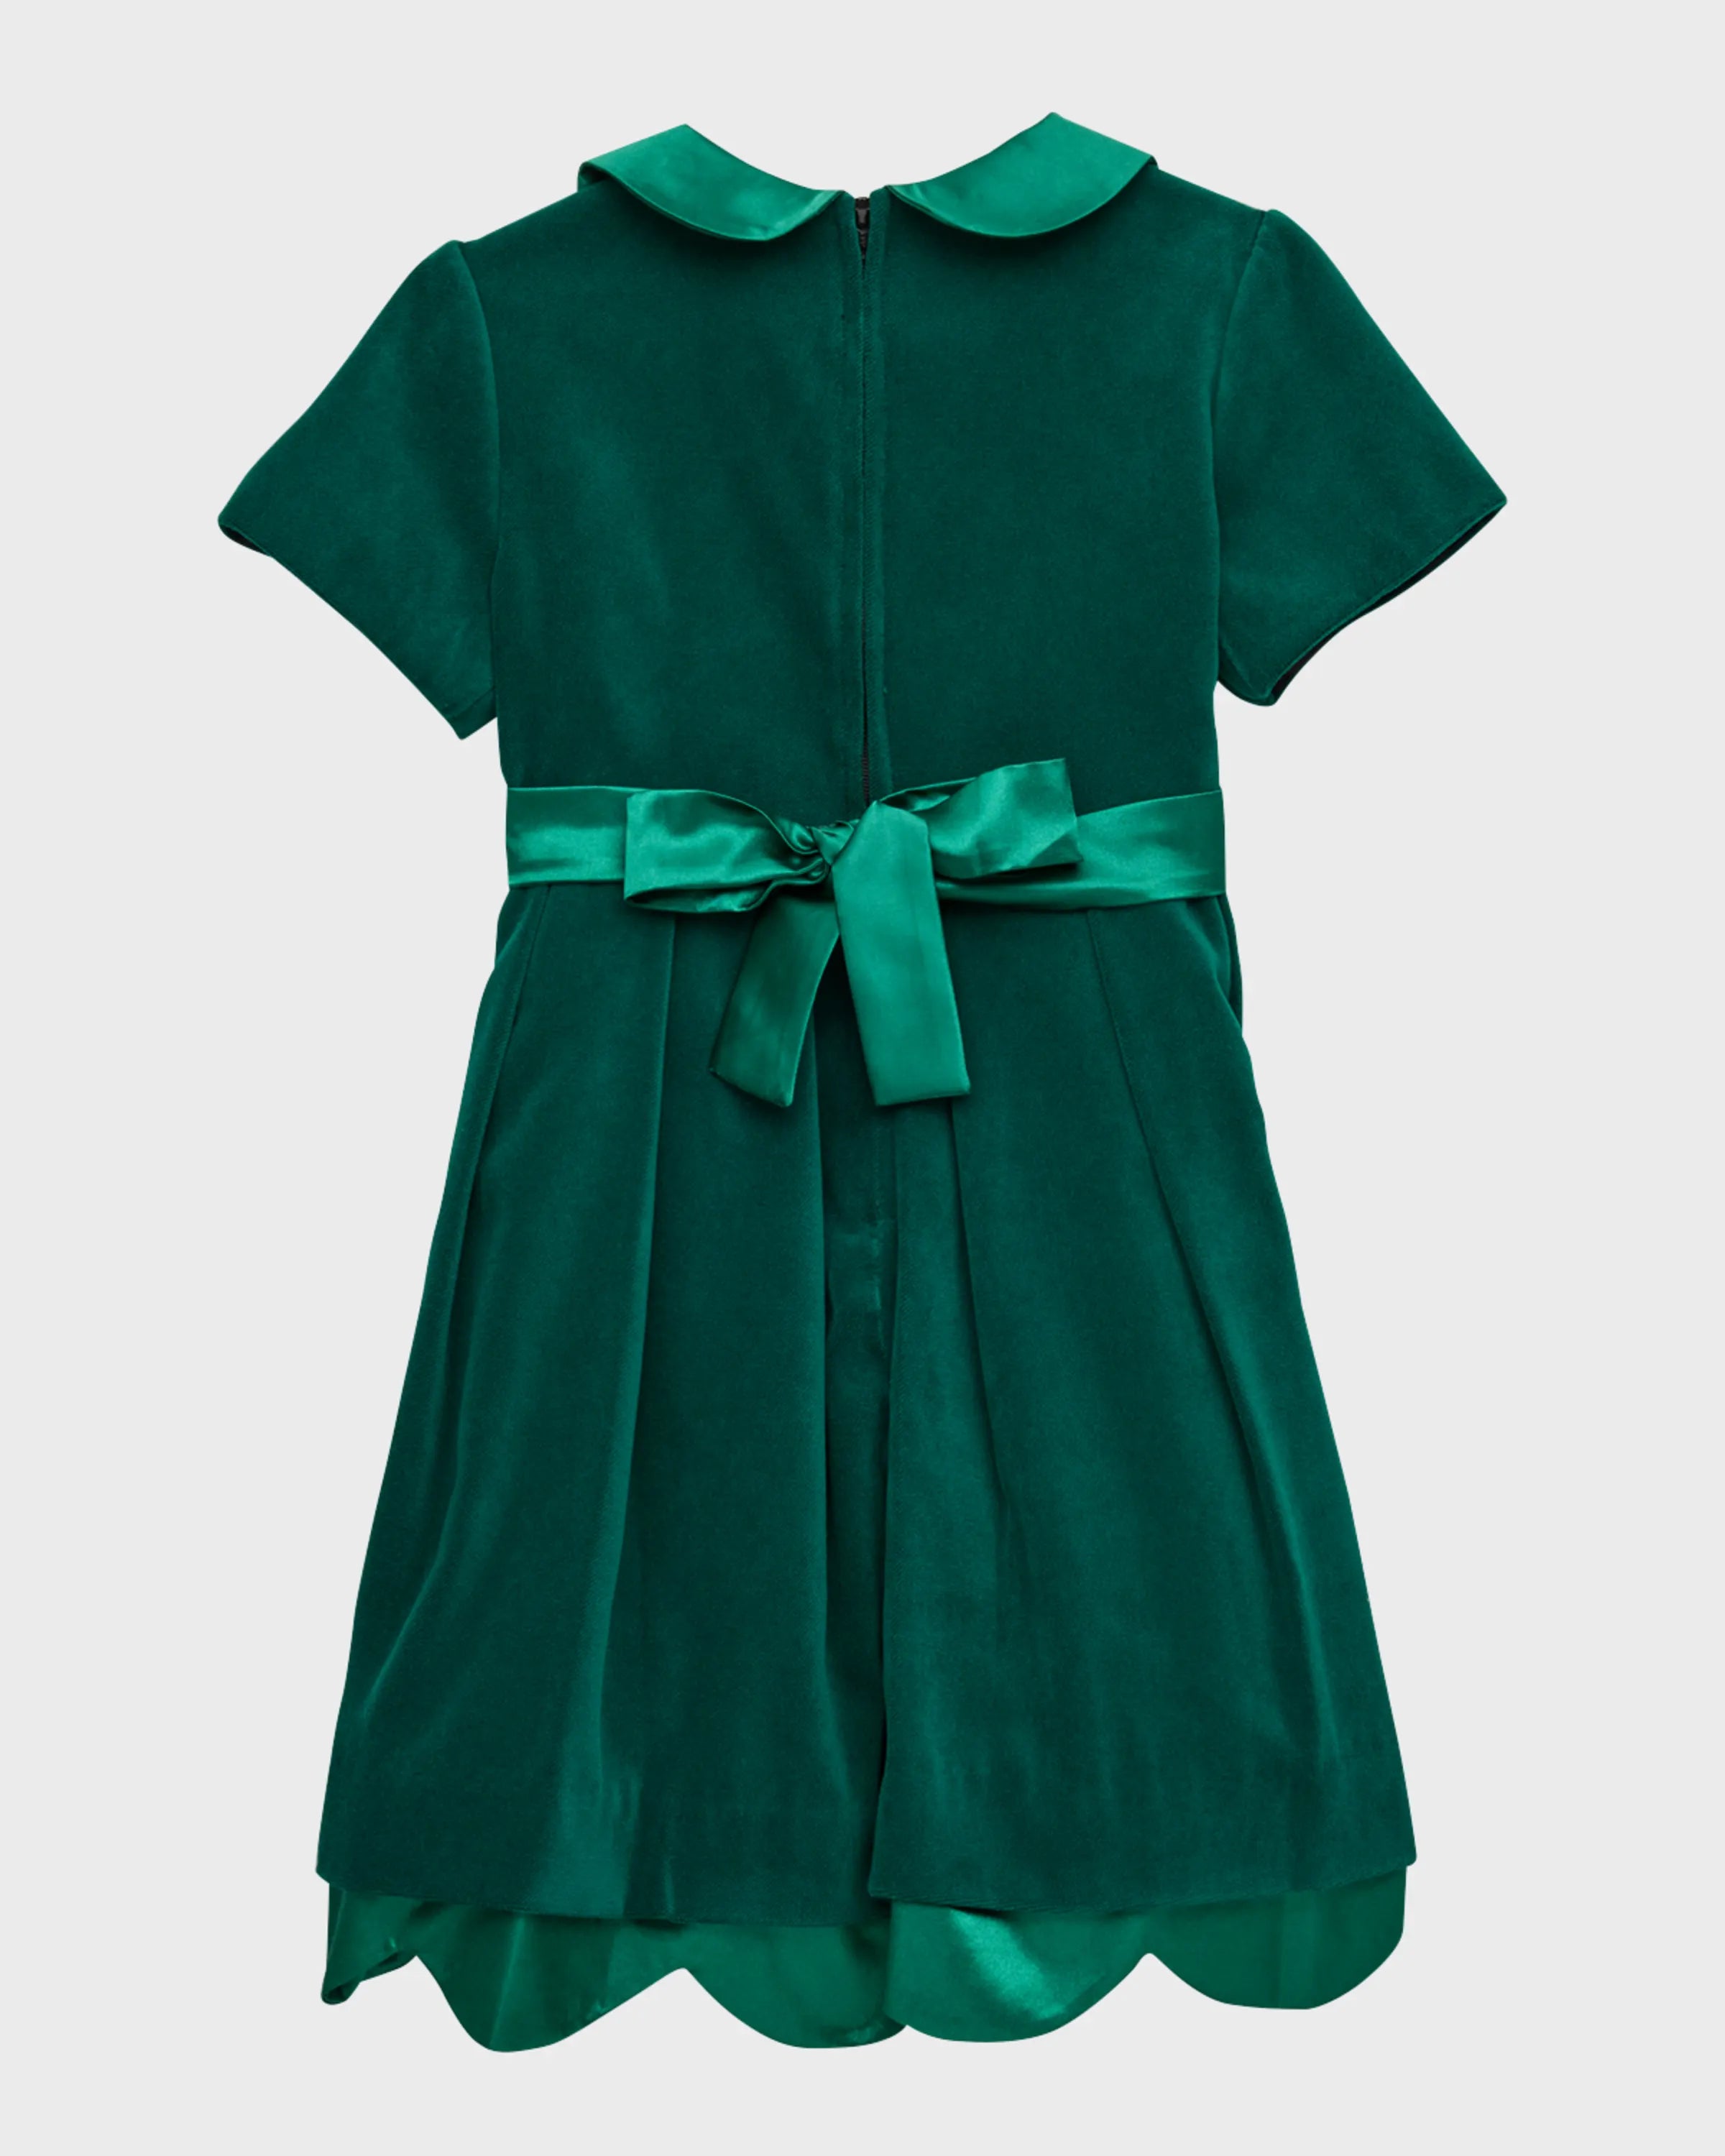 Florence Eiseman Velvet Dess in Green